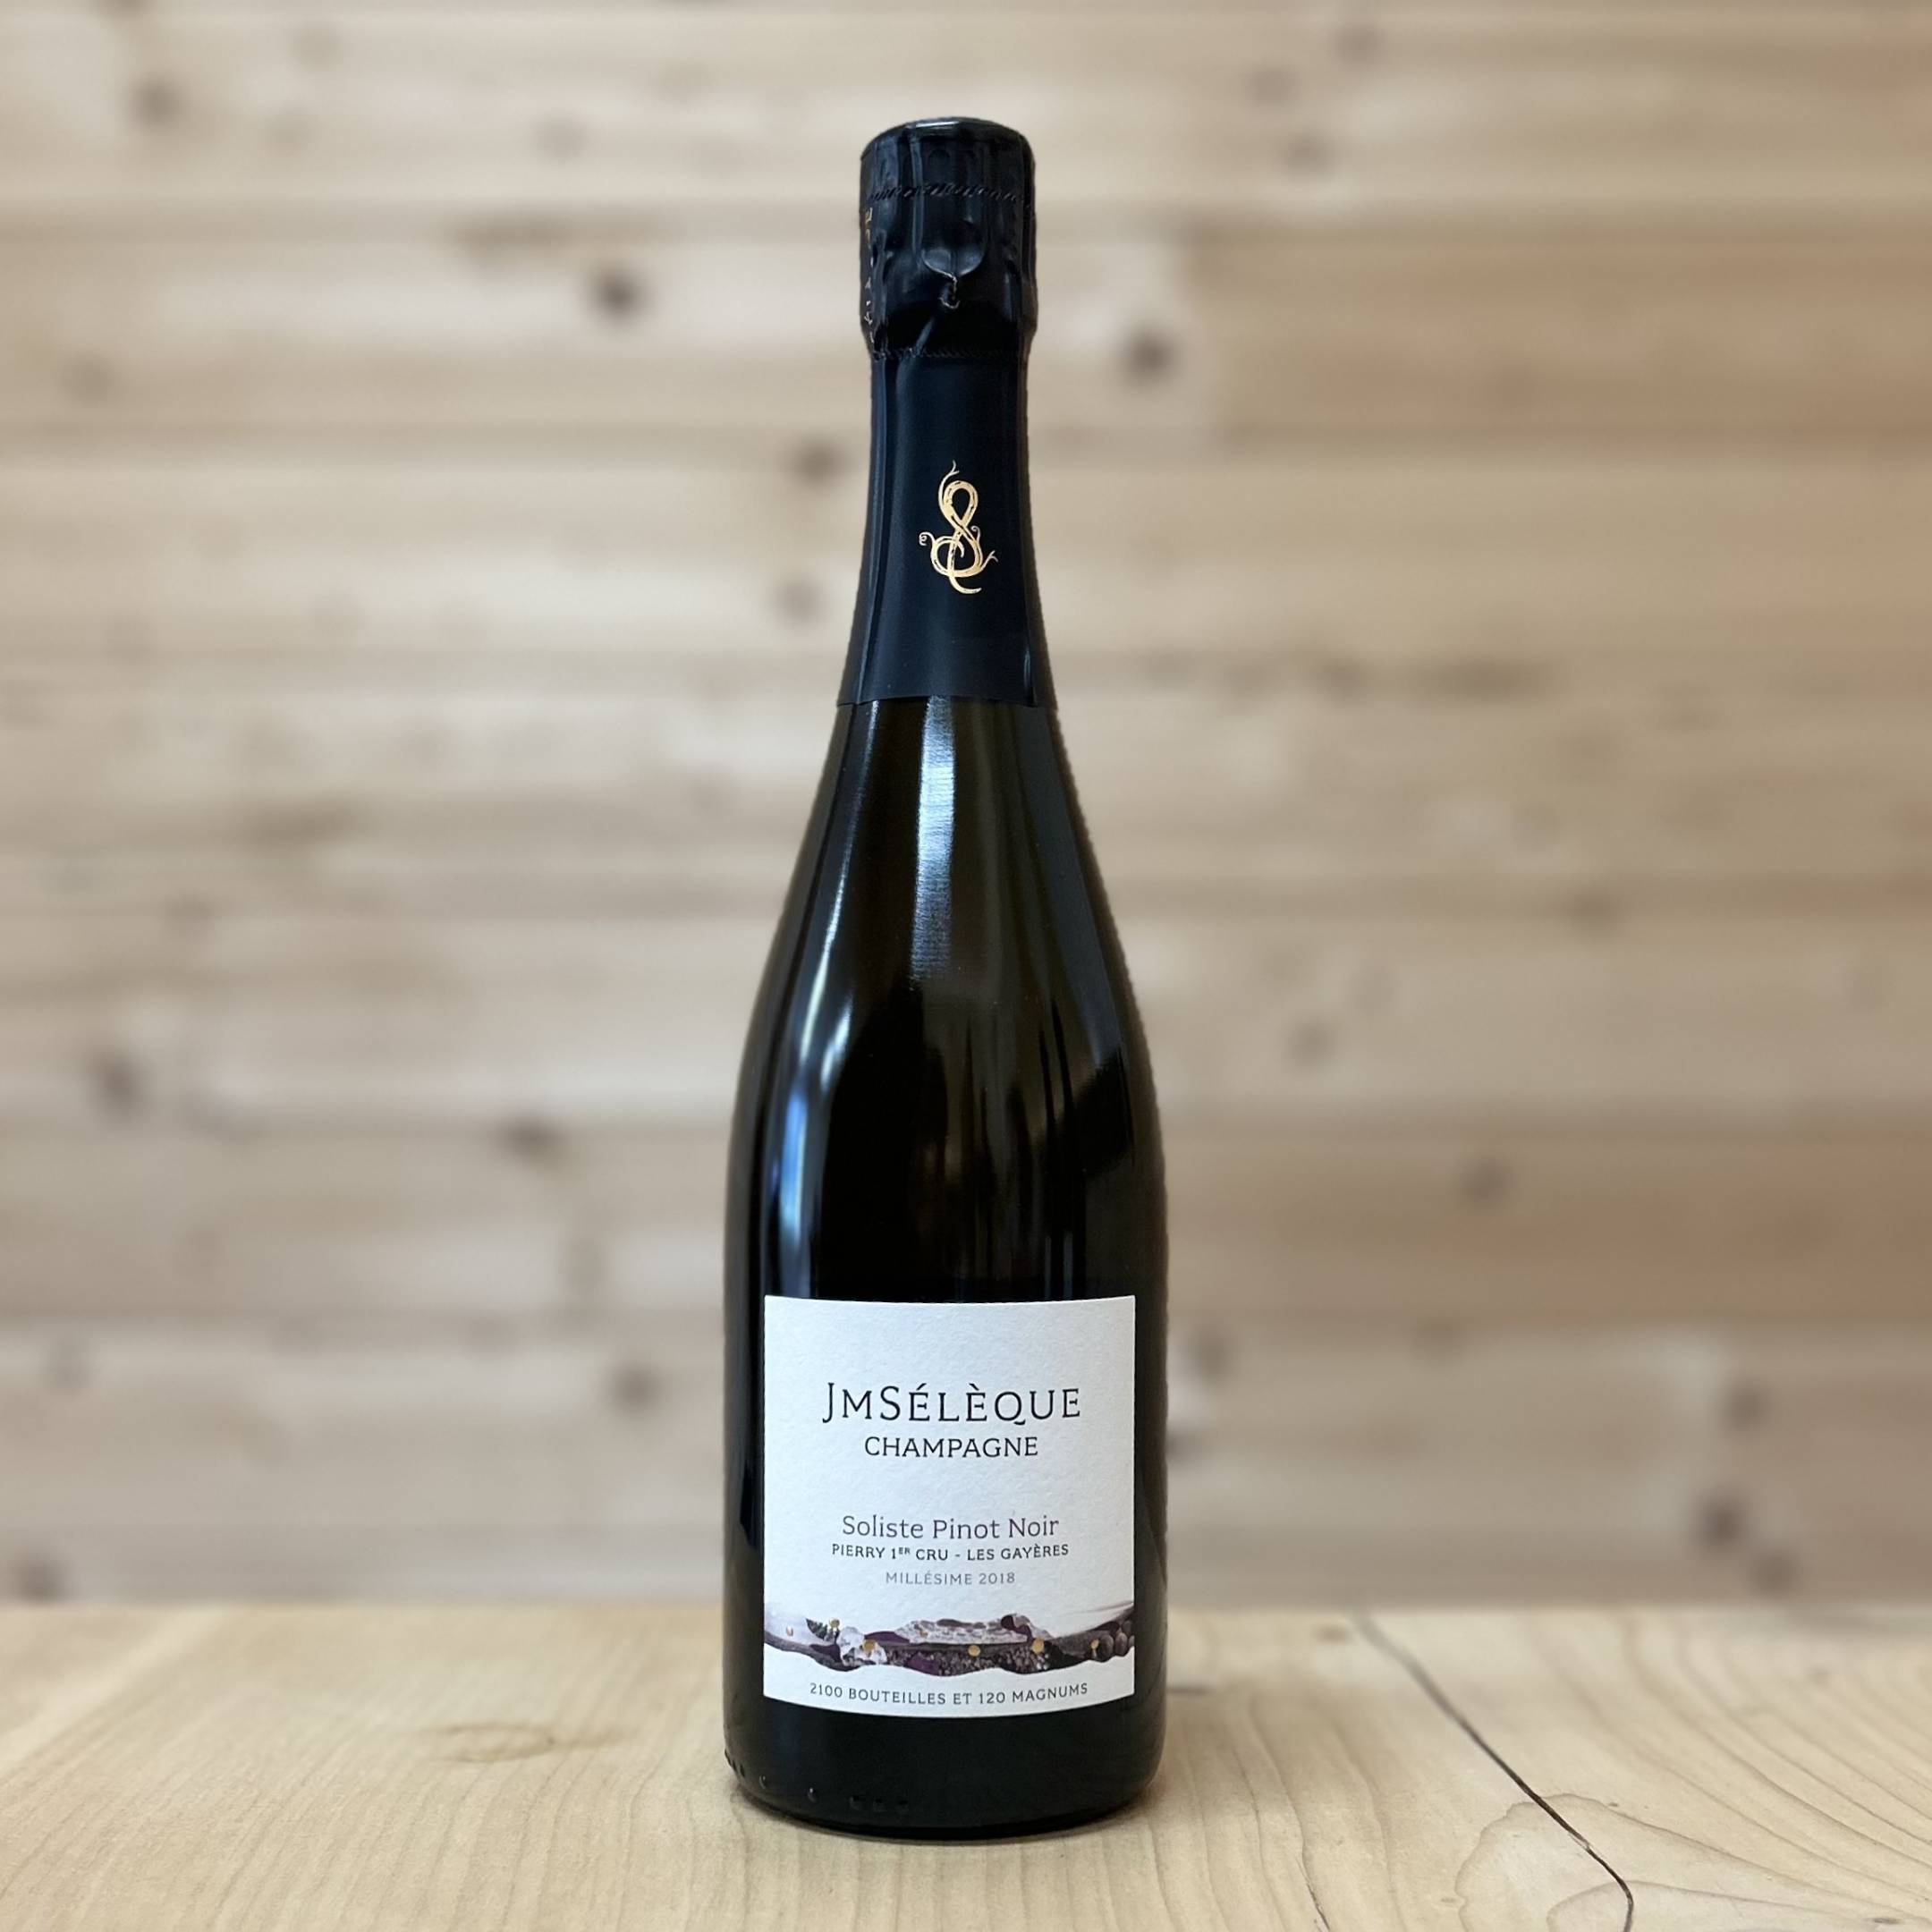 J-M Seleque Champagne Soliste Pinot Noir Pierry Premier Cru Extra Brut 2018